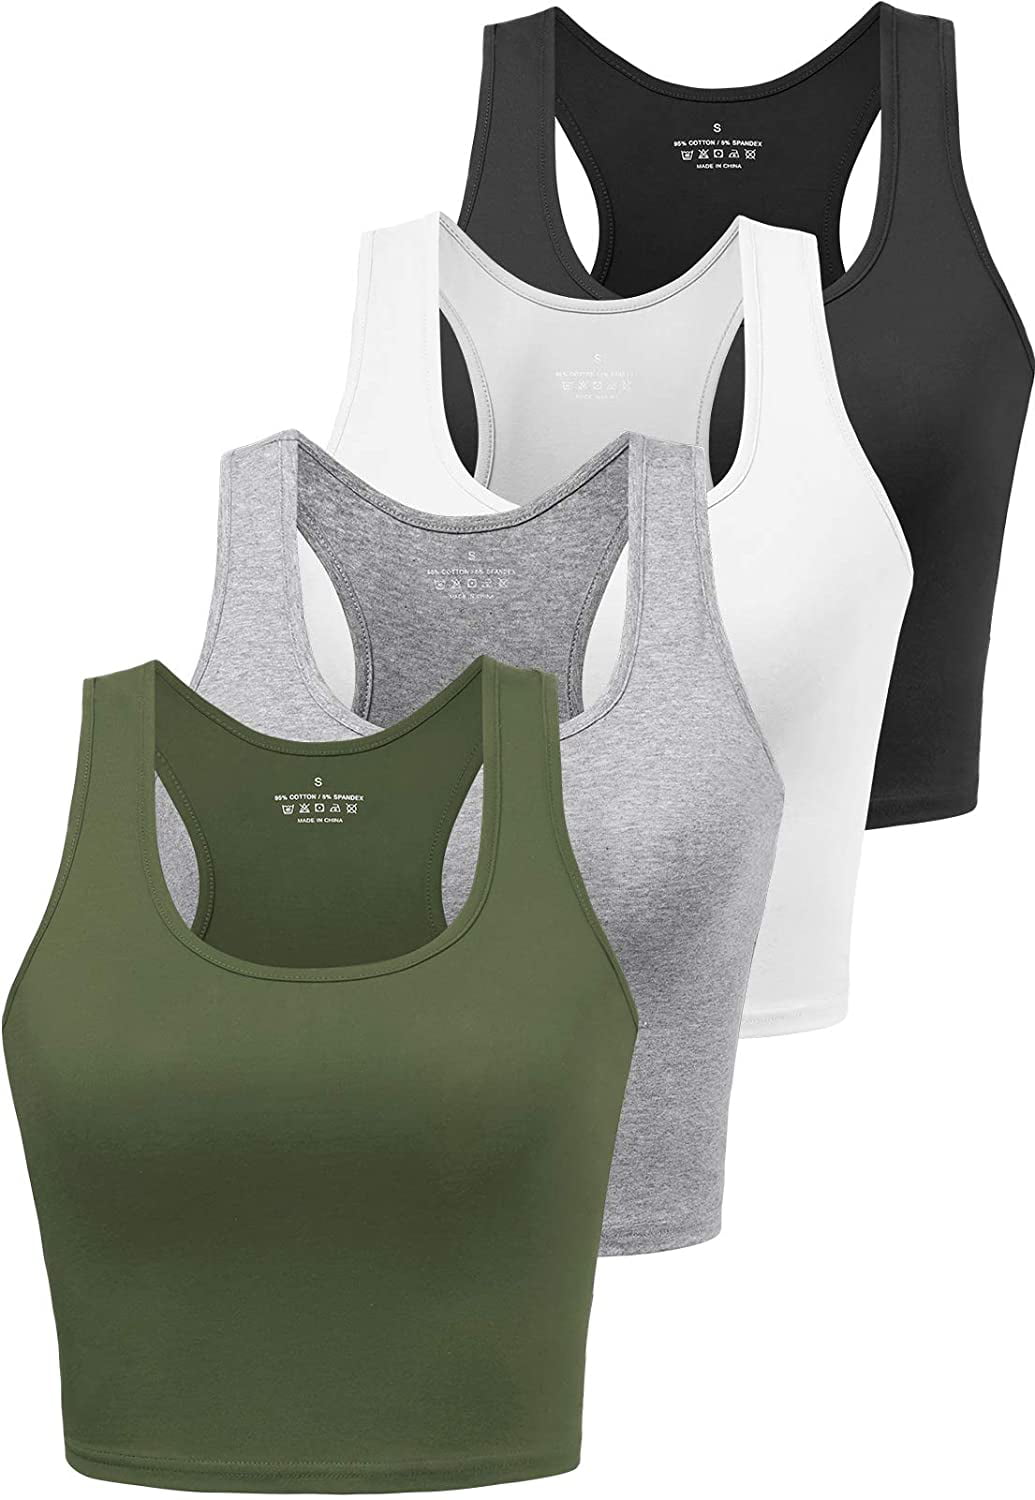 4 Pieces Basic Crop Tank Tops Womens Sleeveless Racerback Crop Sport Tank Tops Sport Bra Yoga Workout Shirt for Teen Girl